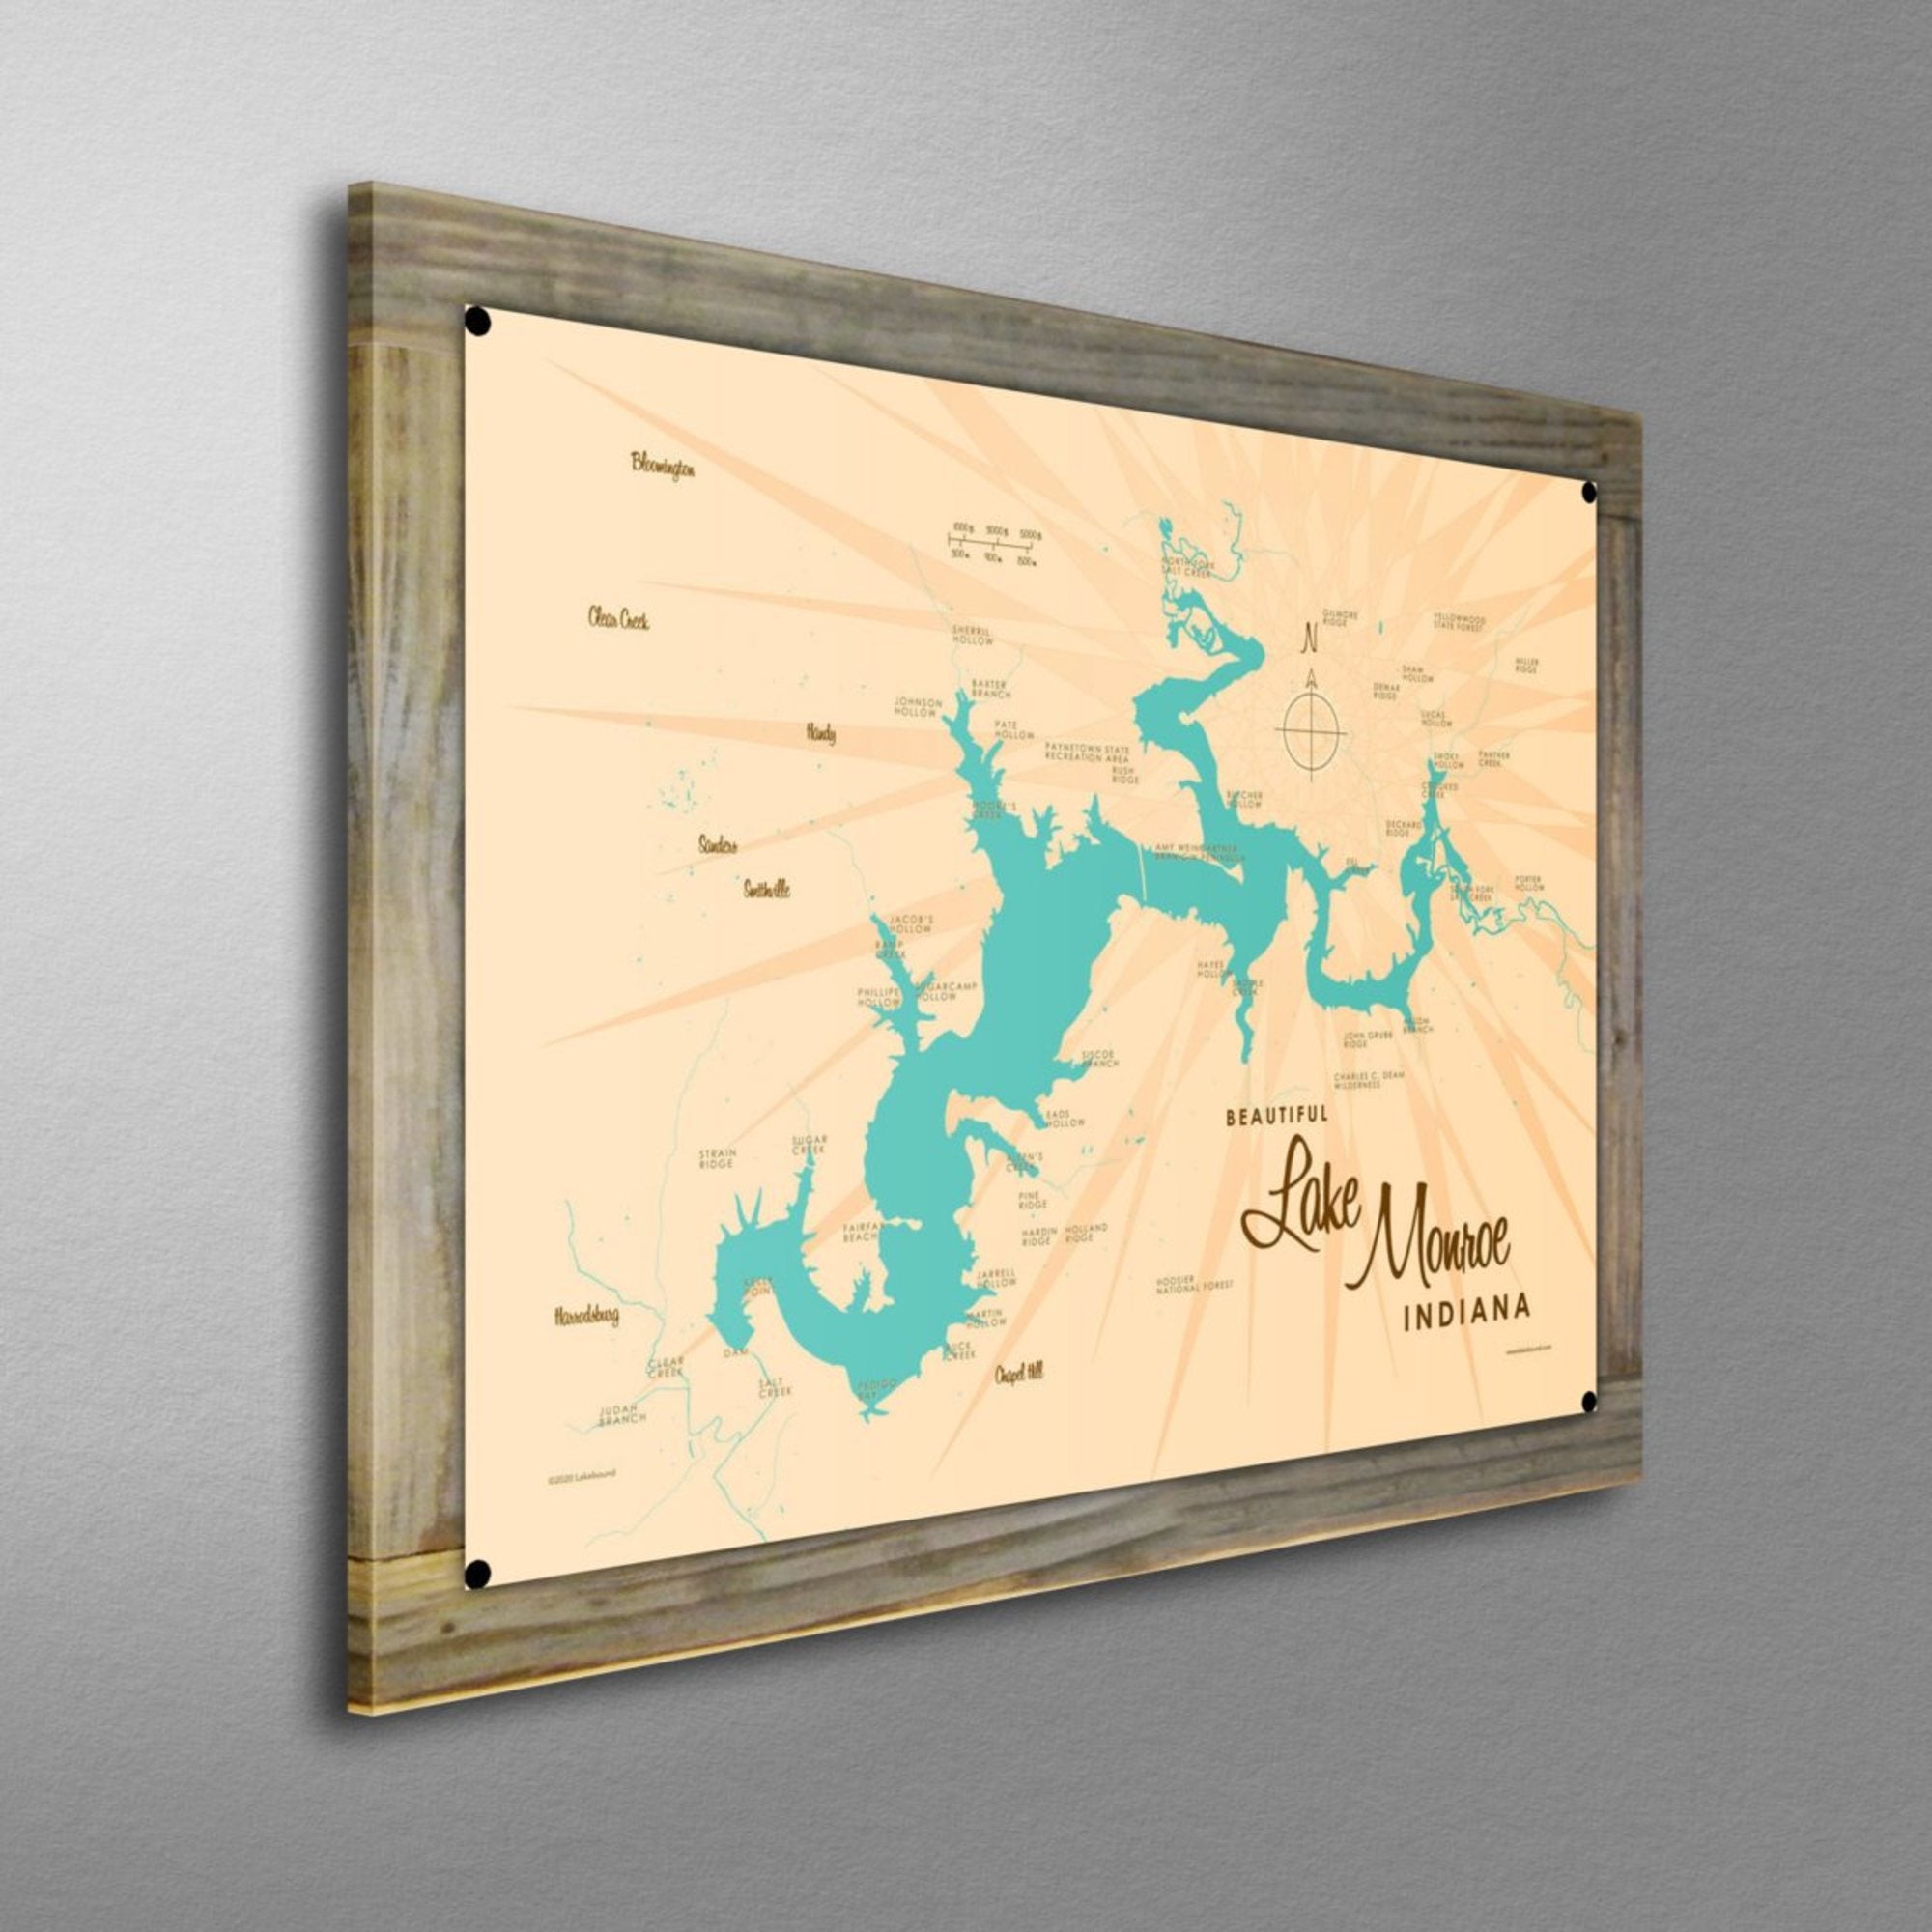 Lake Monroe Indiana, Wood-Mounted Metal Sign Map Art